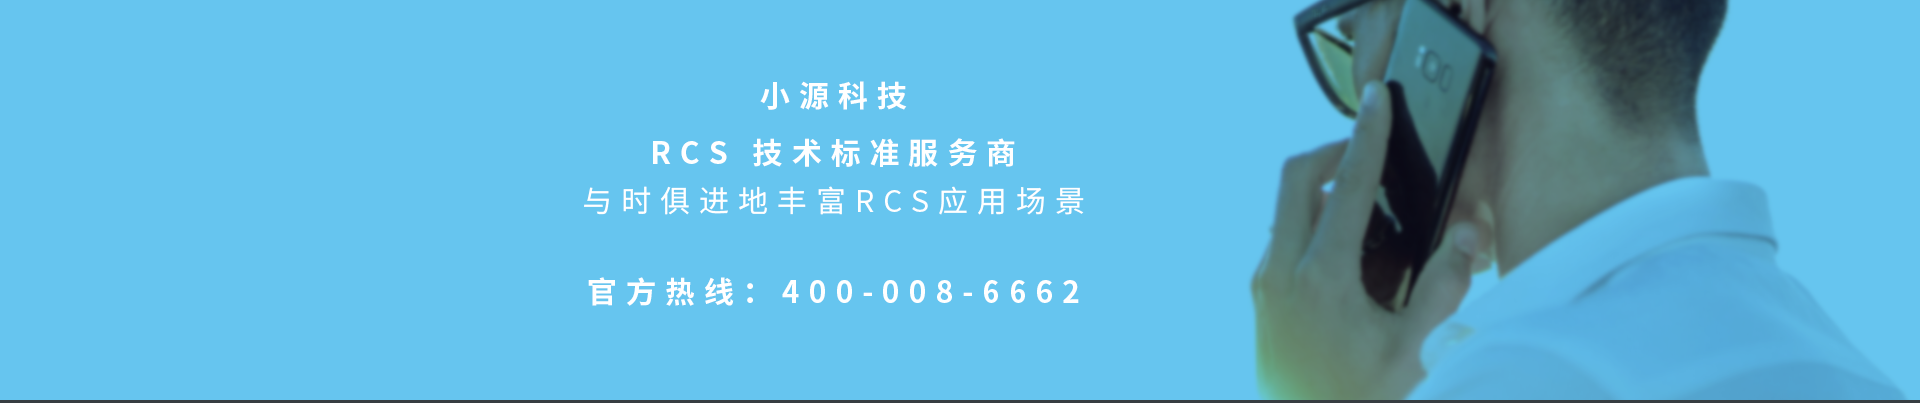 小源科技Rcs服务商官方热线